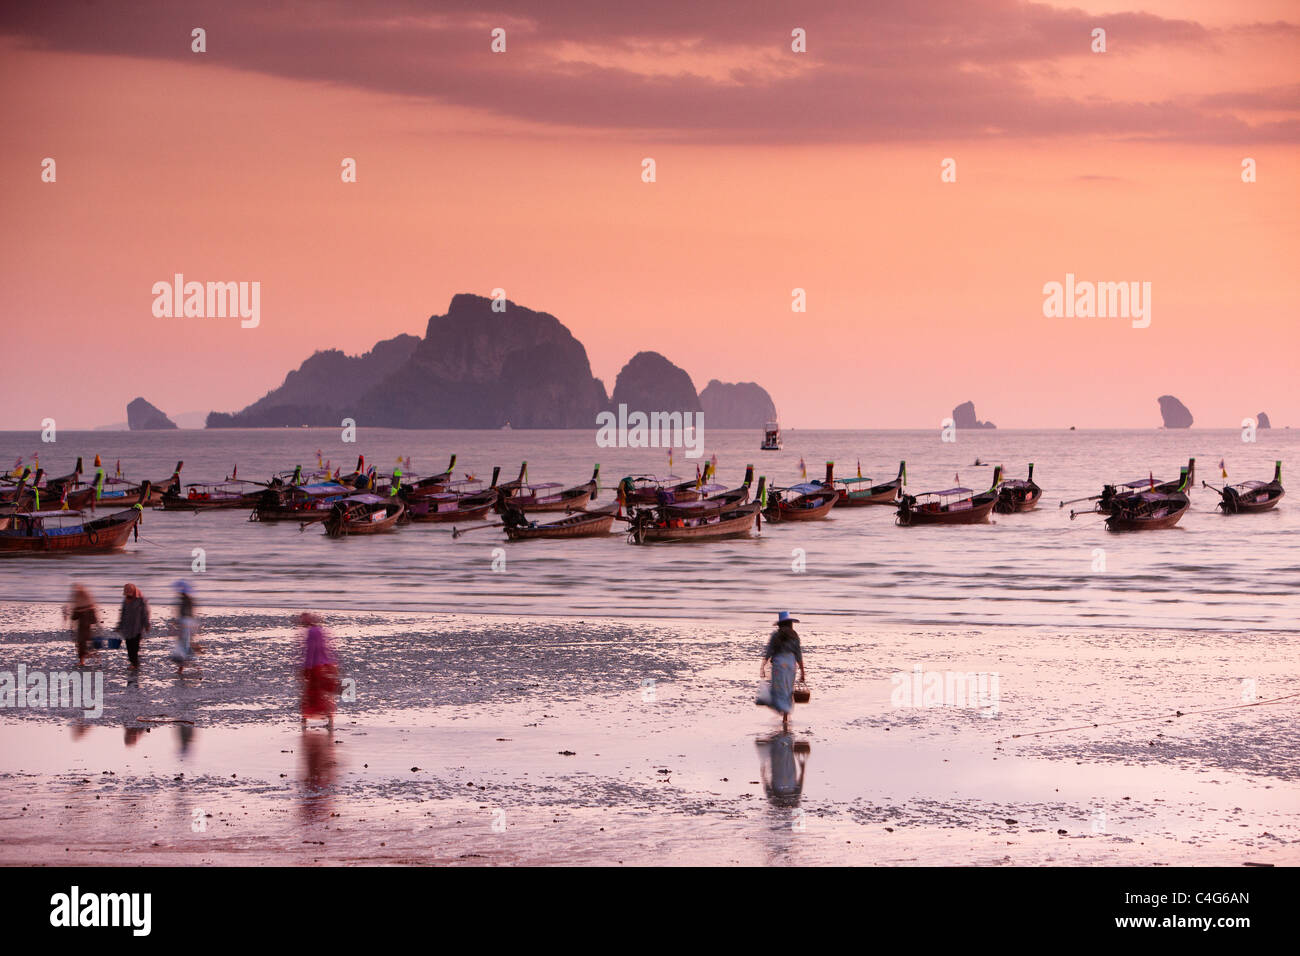 La plage de Ao Nang au crépuscule, nr Krabi, Thaïlande Banque D'Images